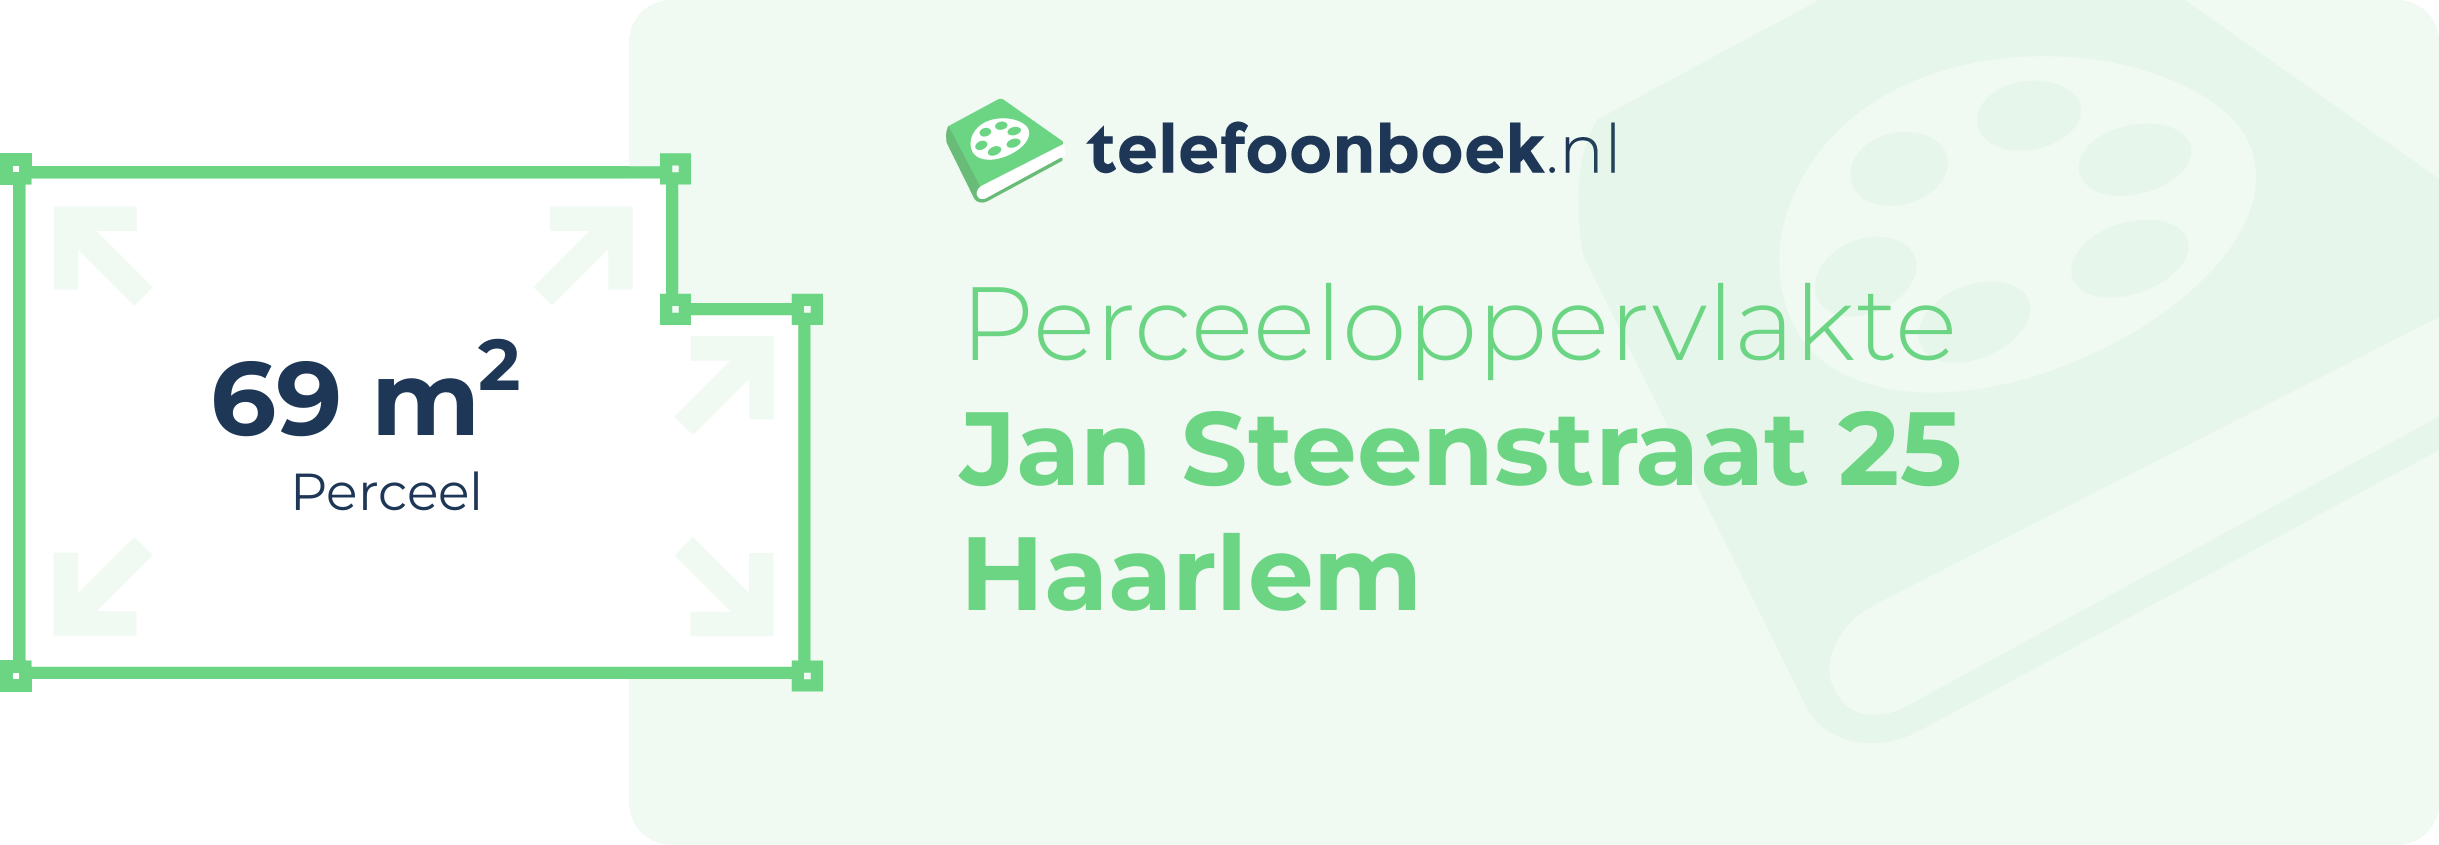 Perceeloppervlakte Jan Steenstraat 25 Haarlem